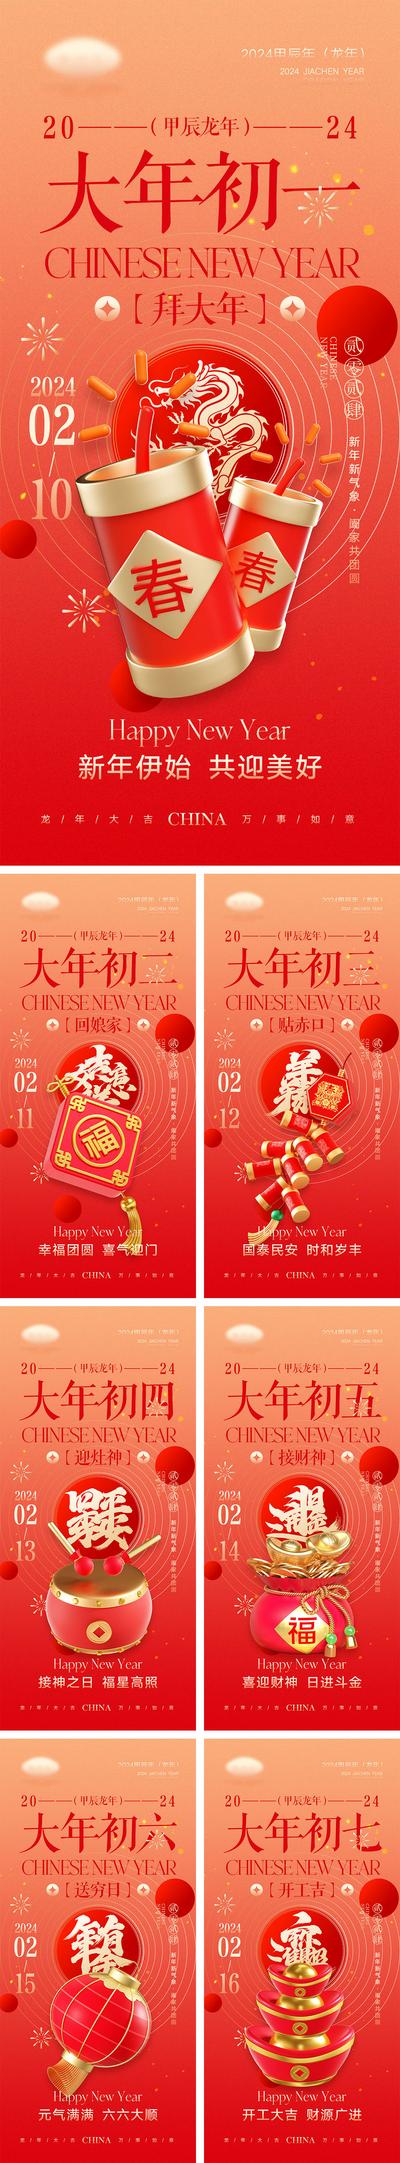 南门网 海报 地产 中国传统节日  龙年 新年 元旦 小年 除夕 春节  喜庆 年夜饭